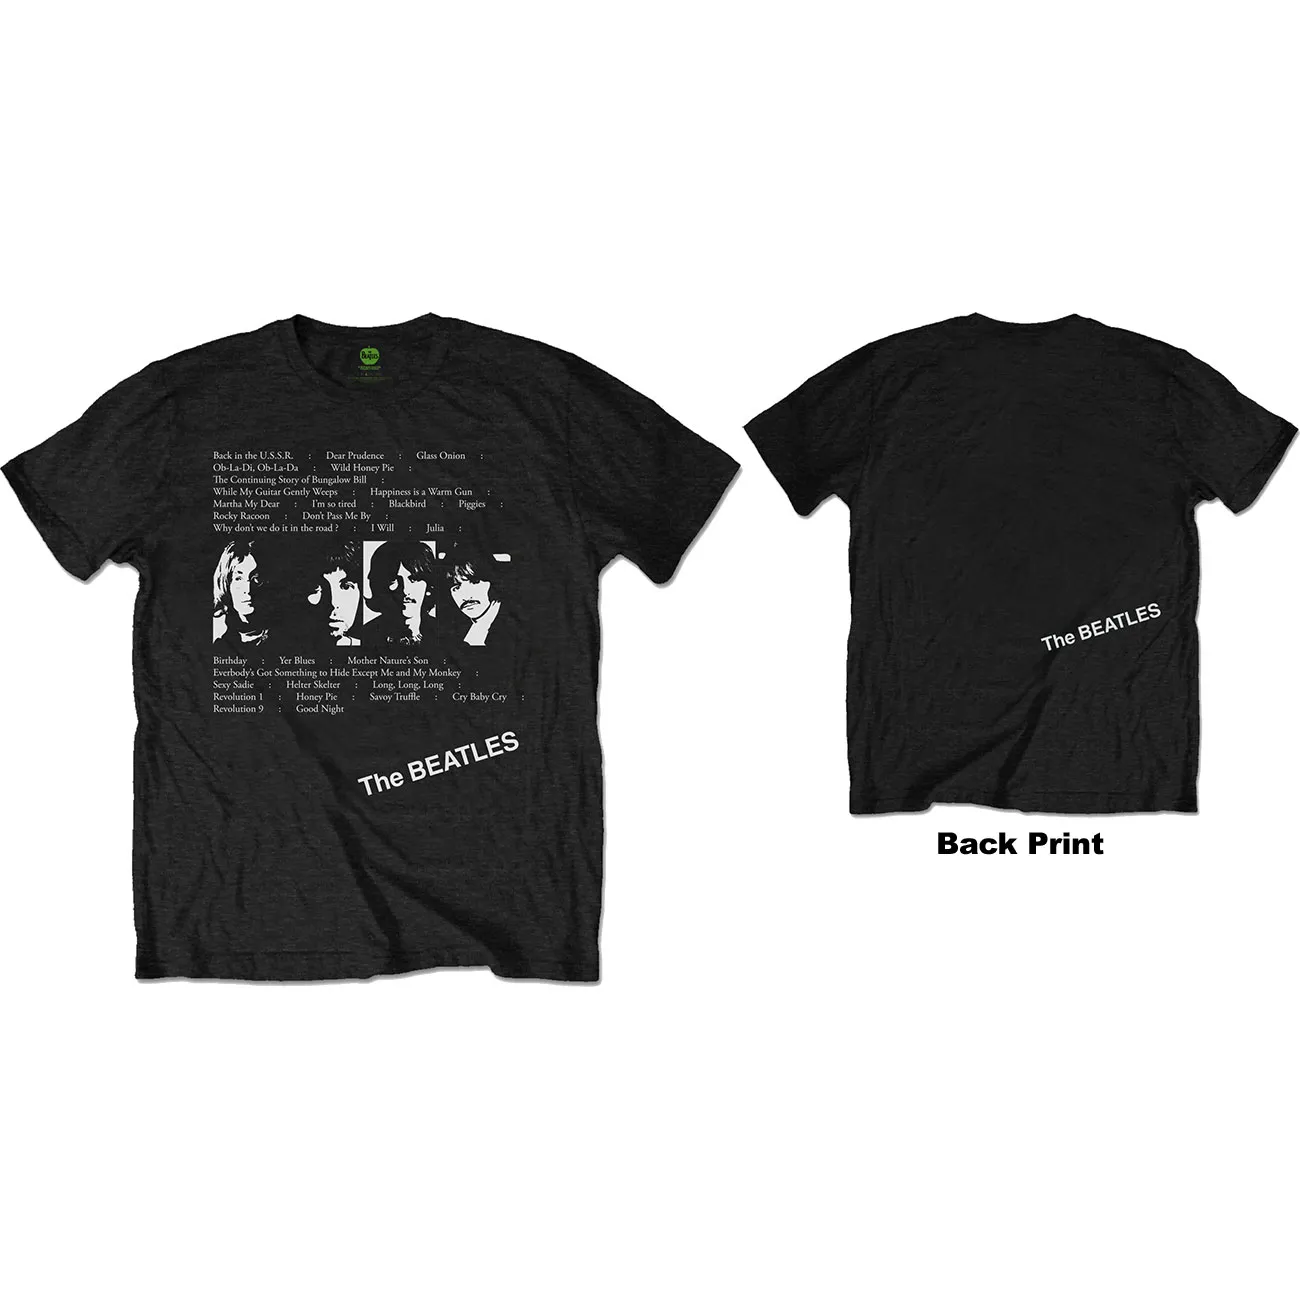 The Beatles - Unisex T-Shirt White Album Tracks Back Print artwork